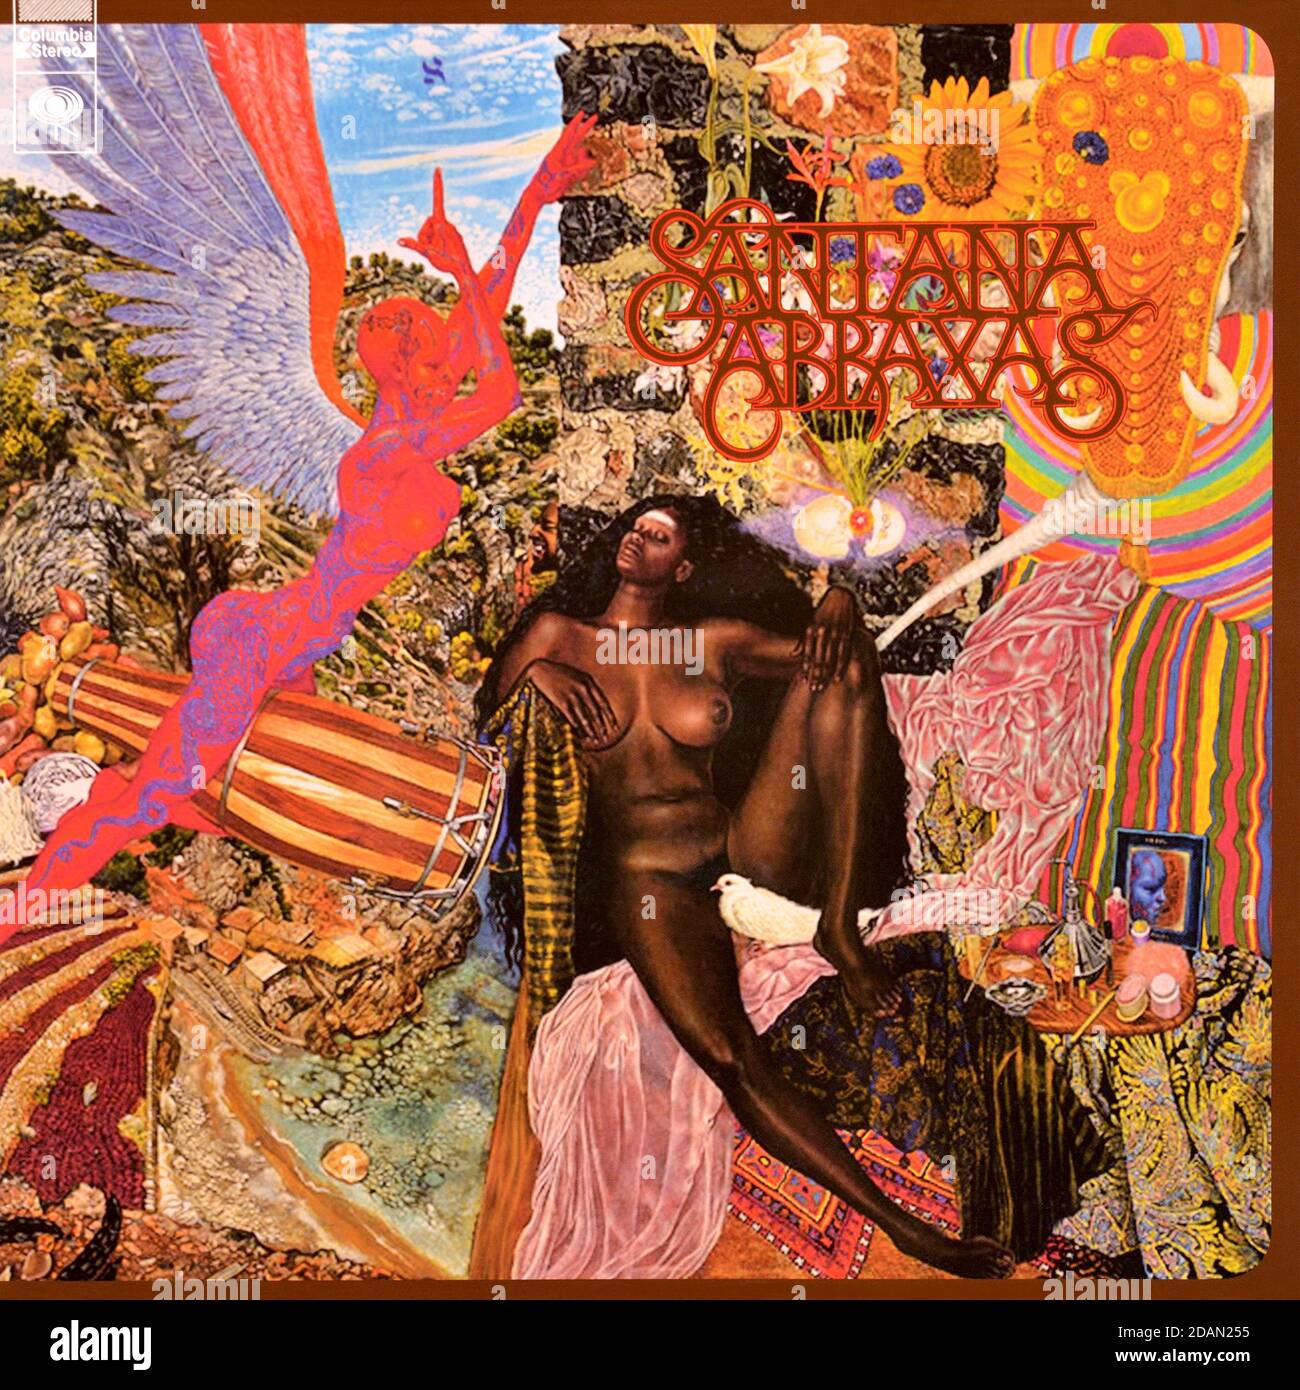 Santana .- original vinyl album cover - Abraxas - 1970 Stock Photo